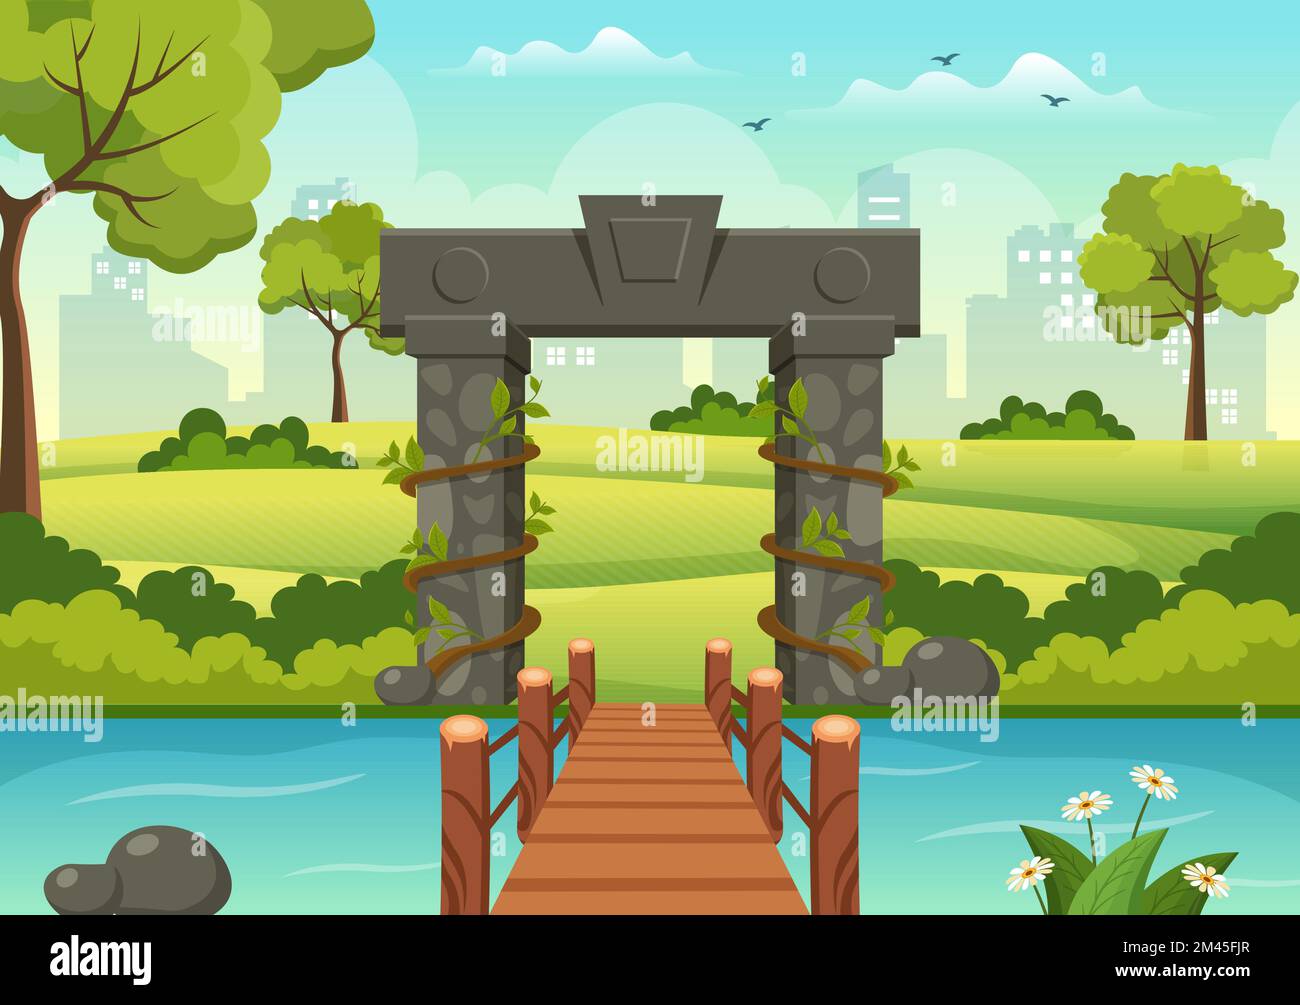 Portal mit Sommerlandschaft Steinbogen Eingang zum öffentlichen Park, Grüngras oder Garten in flacher Cartoon handgezeichnete Vorlage Illustration Stock Vektor